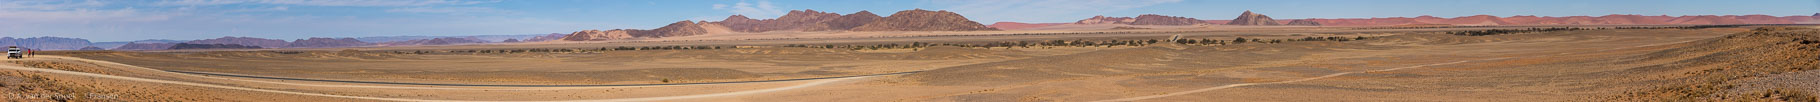 Namibië-0920-0936_v1.jpg